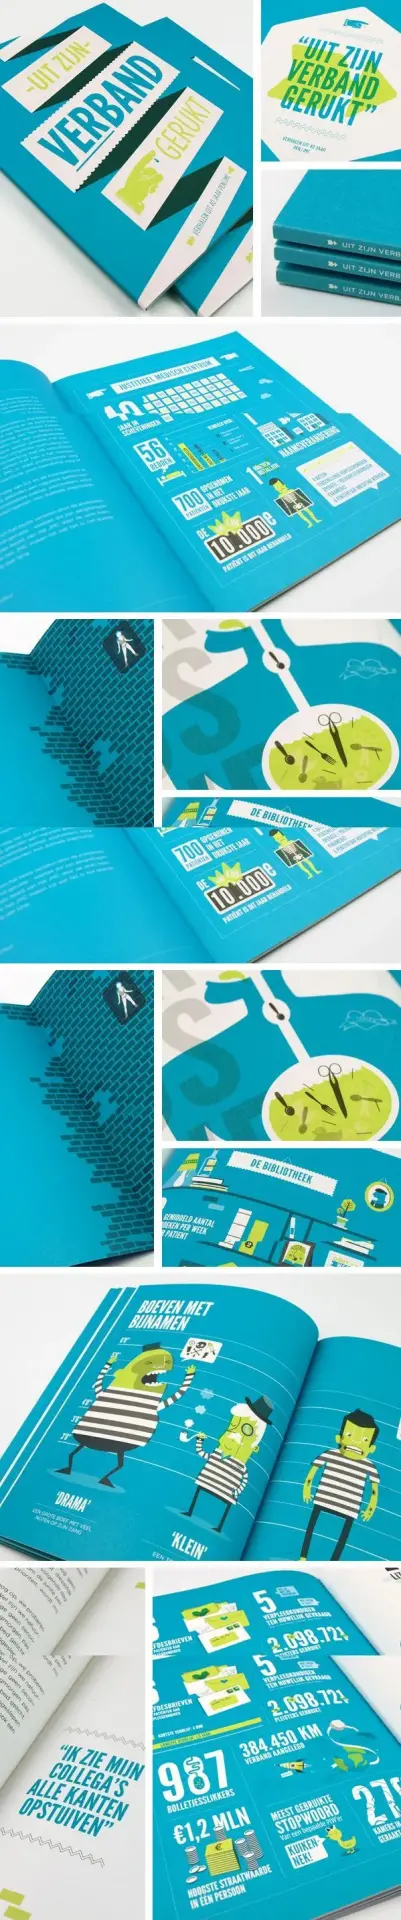 Brochure design1